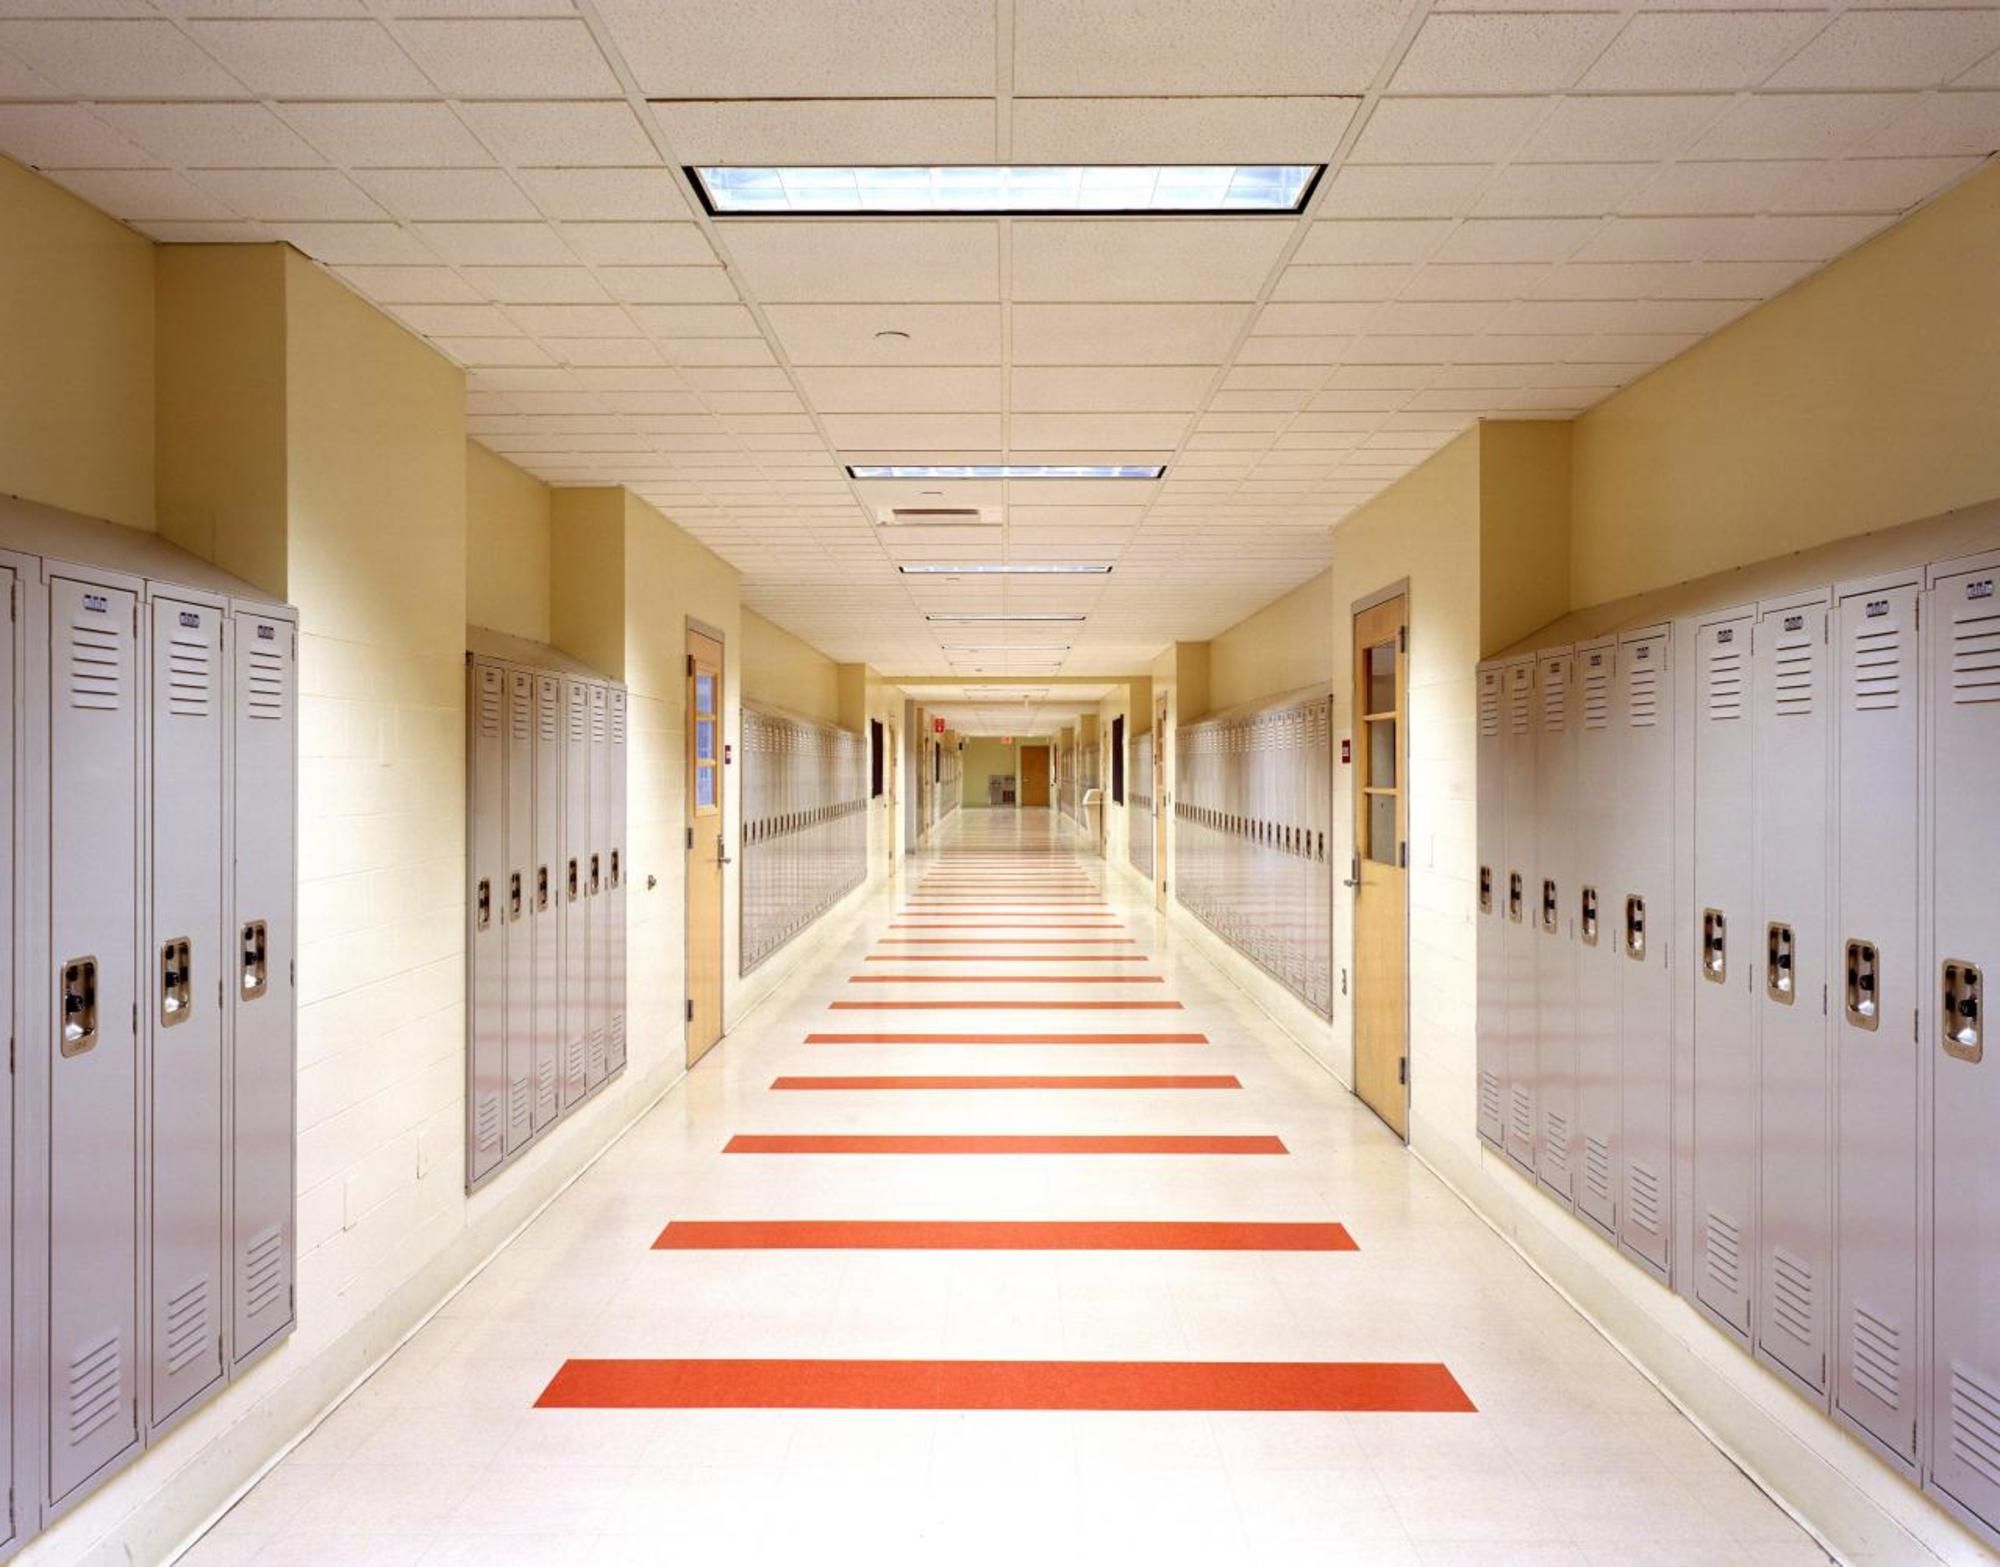 Escuelas. School hallways, Hallway wallpaper, College architecture